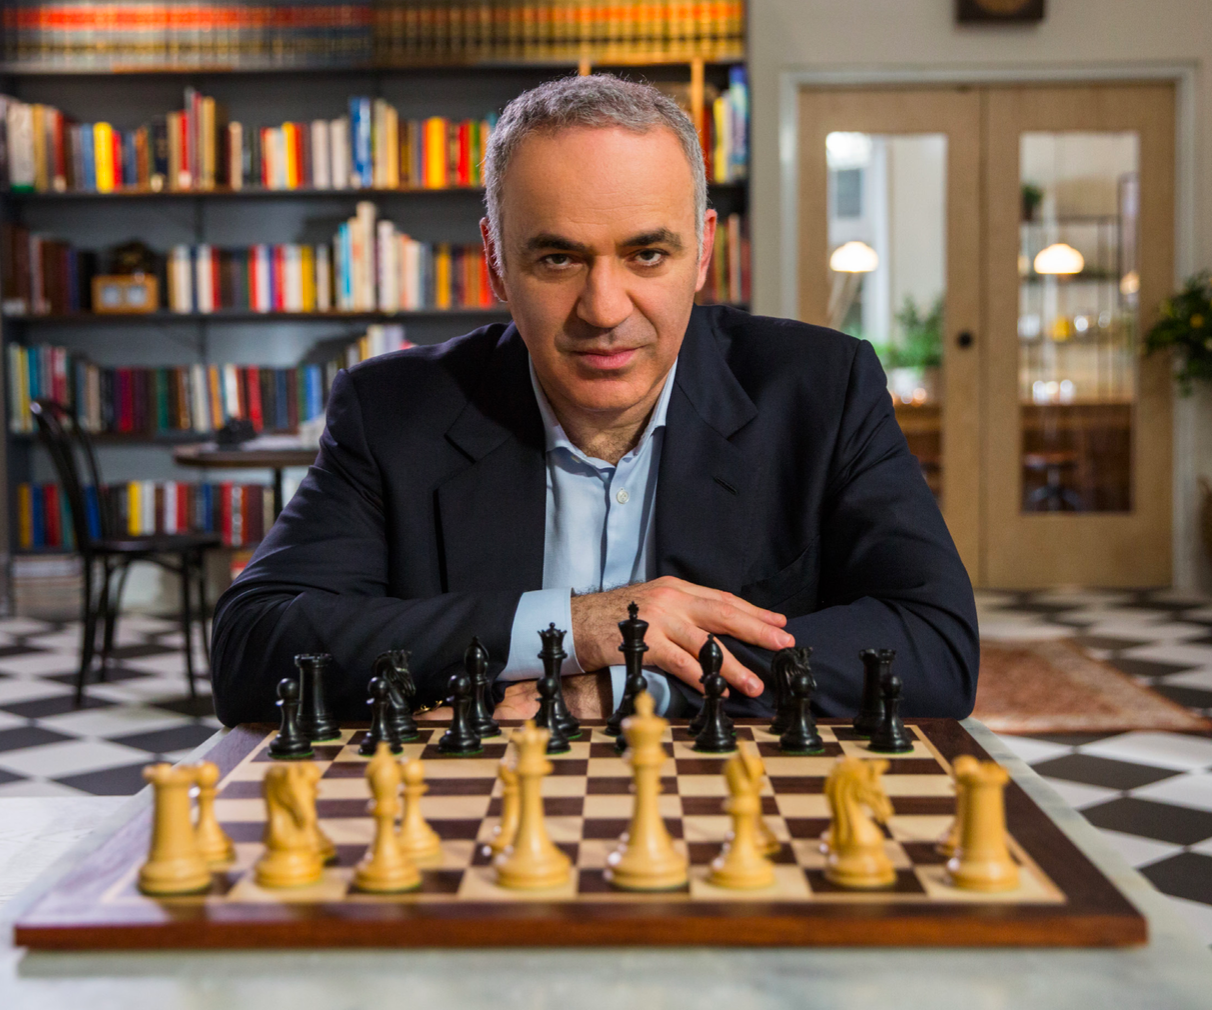 Kasparov vs Deep Blue 1997 Game 1 